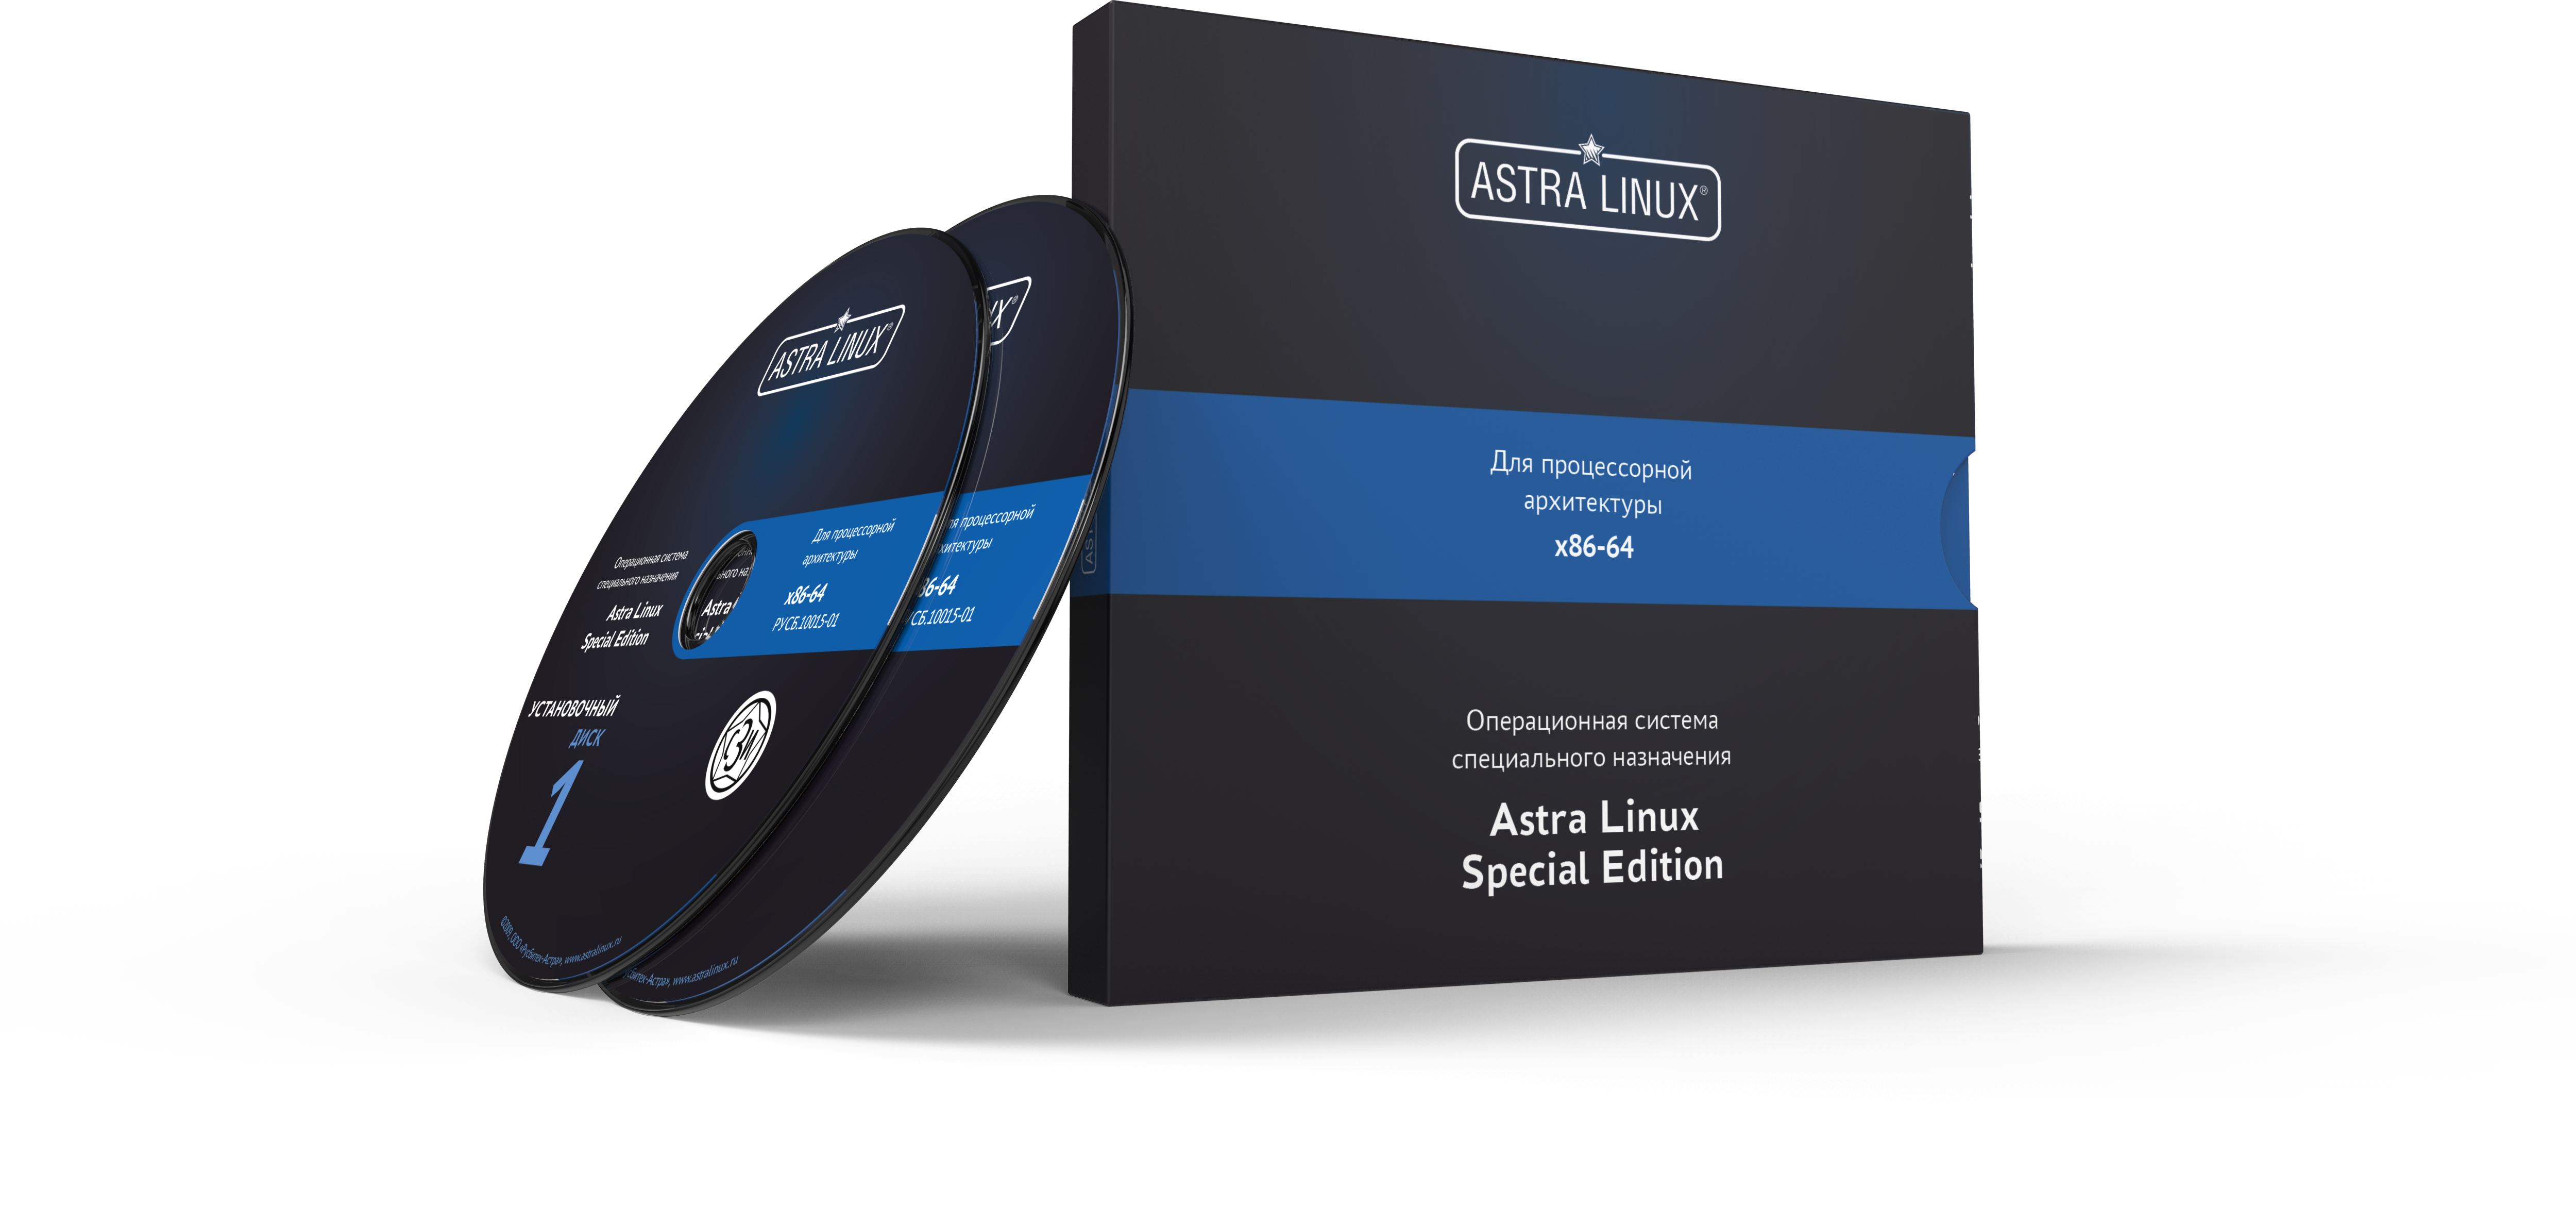 Astra Linux Special Edition 1.7 - Смоленск, "Максимальный", диск, без огр. срока, ТП "Привилегированная" на 12 мес.